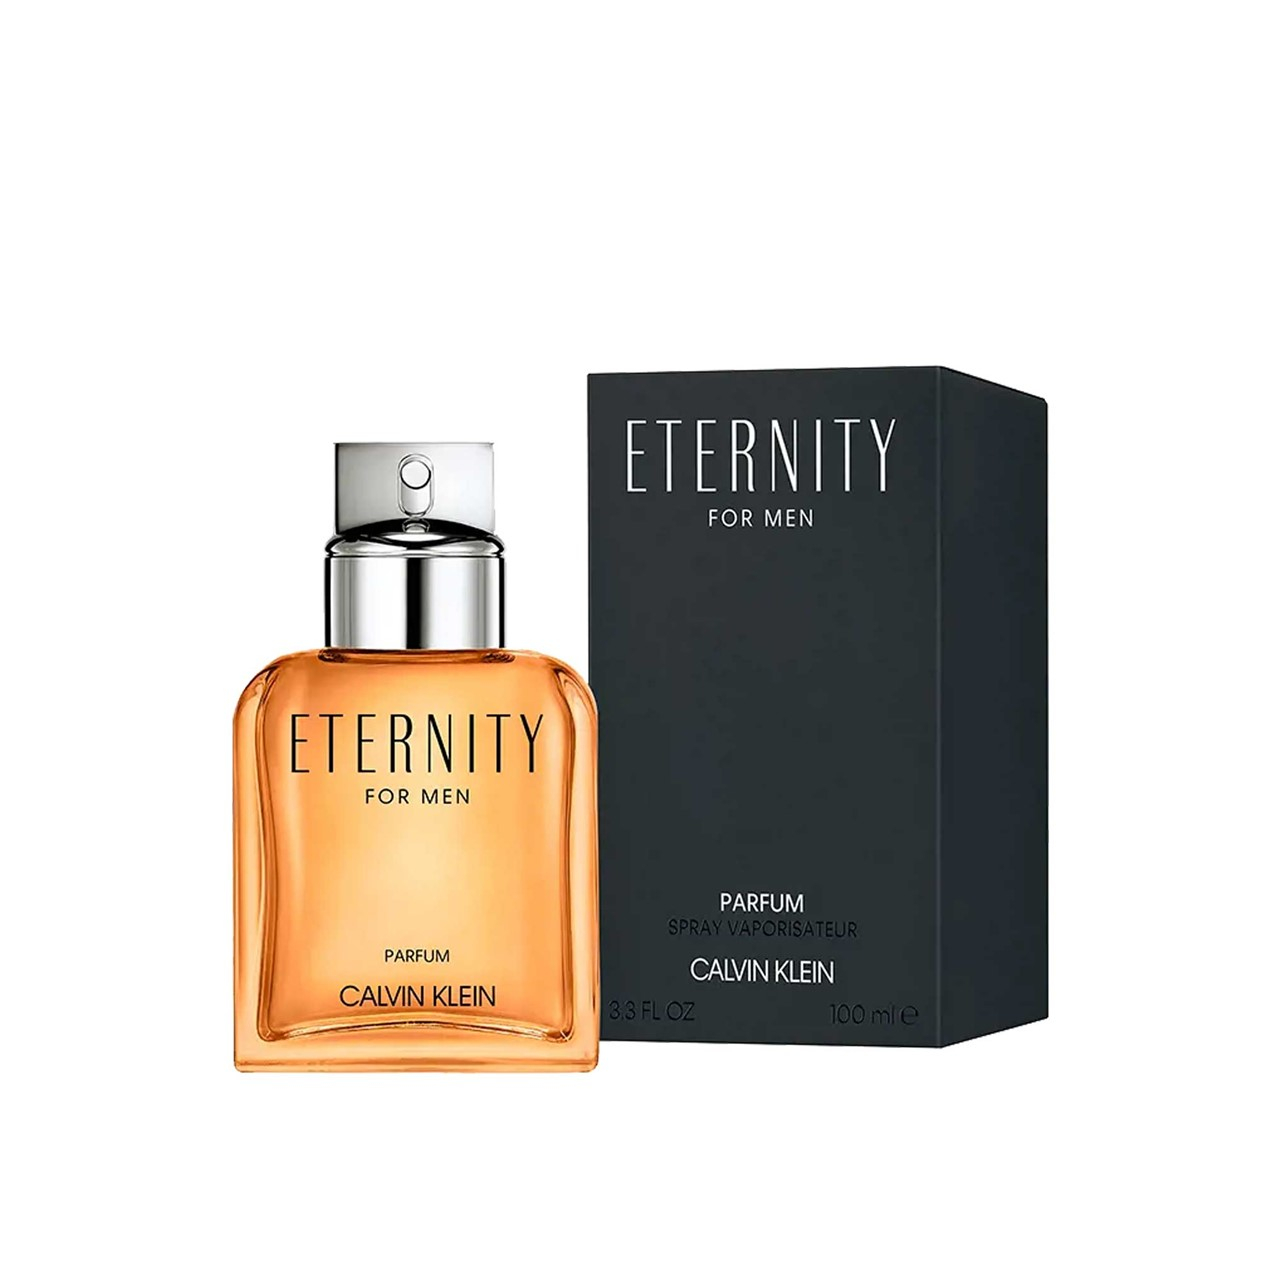  Calvin Klein Eternity for Women Eau de Parfum, 3.3 Fl Oz :  Beauty & Personal Care